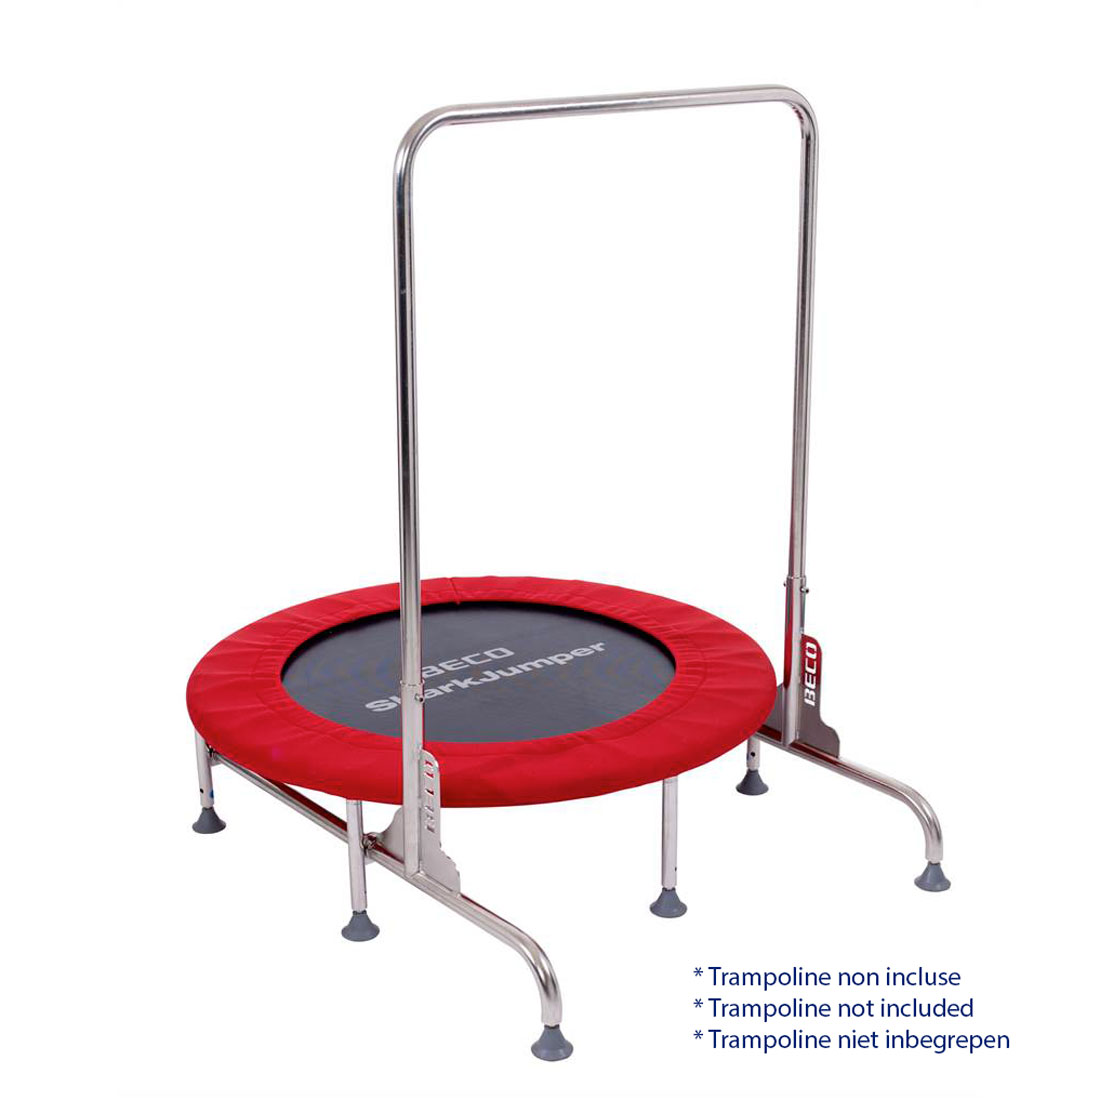 Support pour Aqua trampoline SHARKJUMPER BECO - Trampoline en option